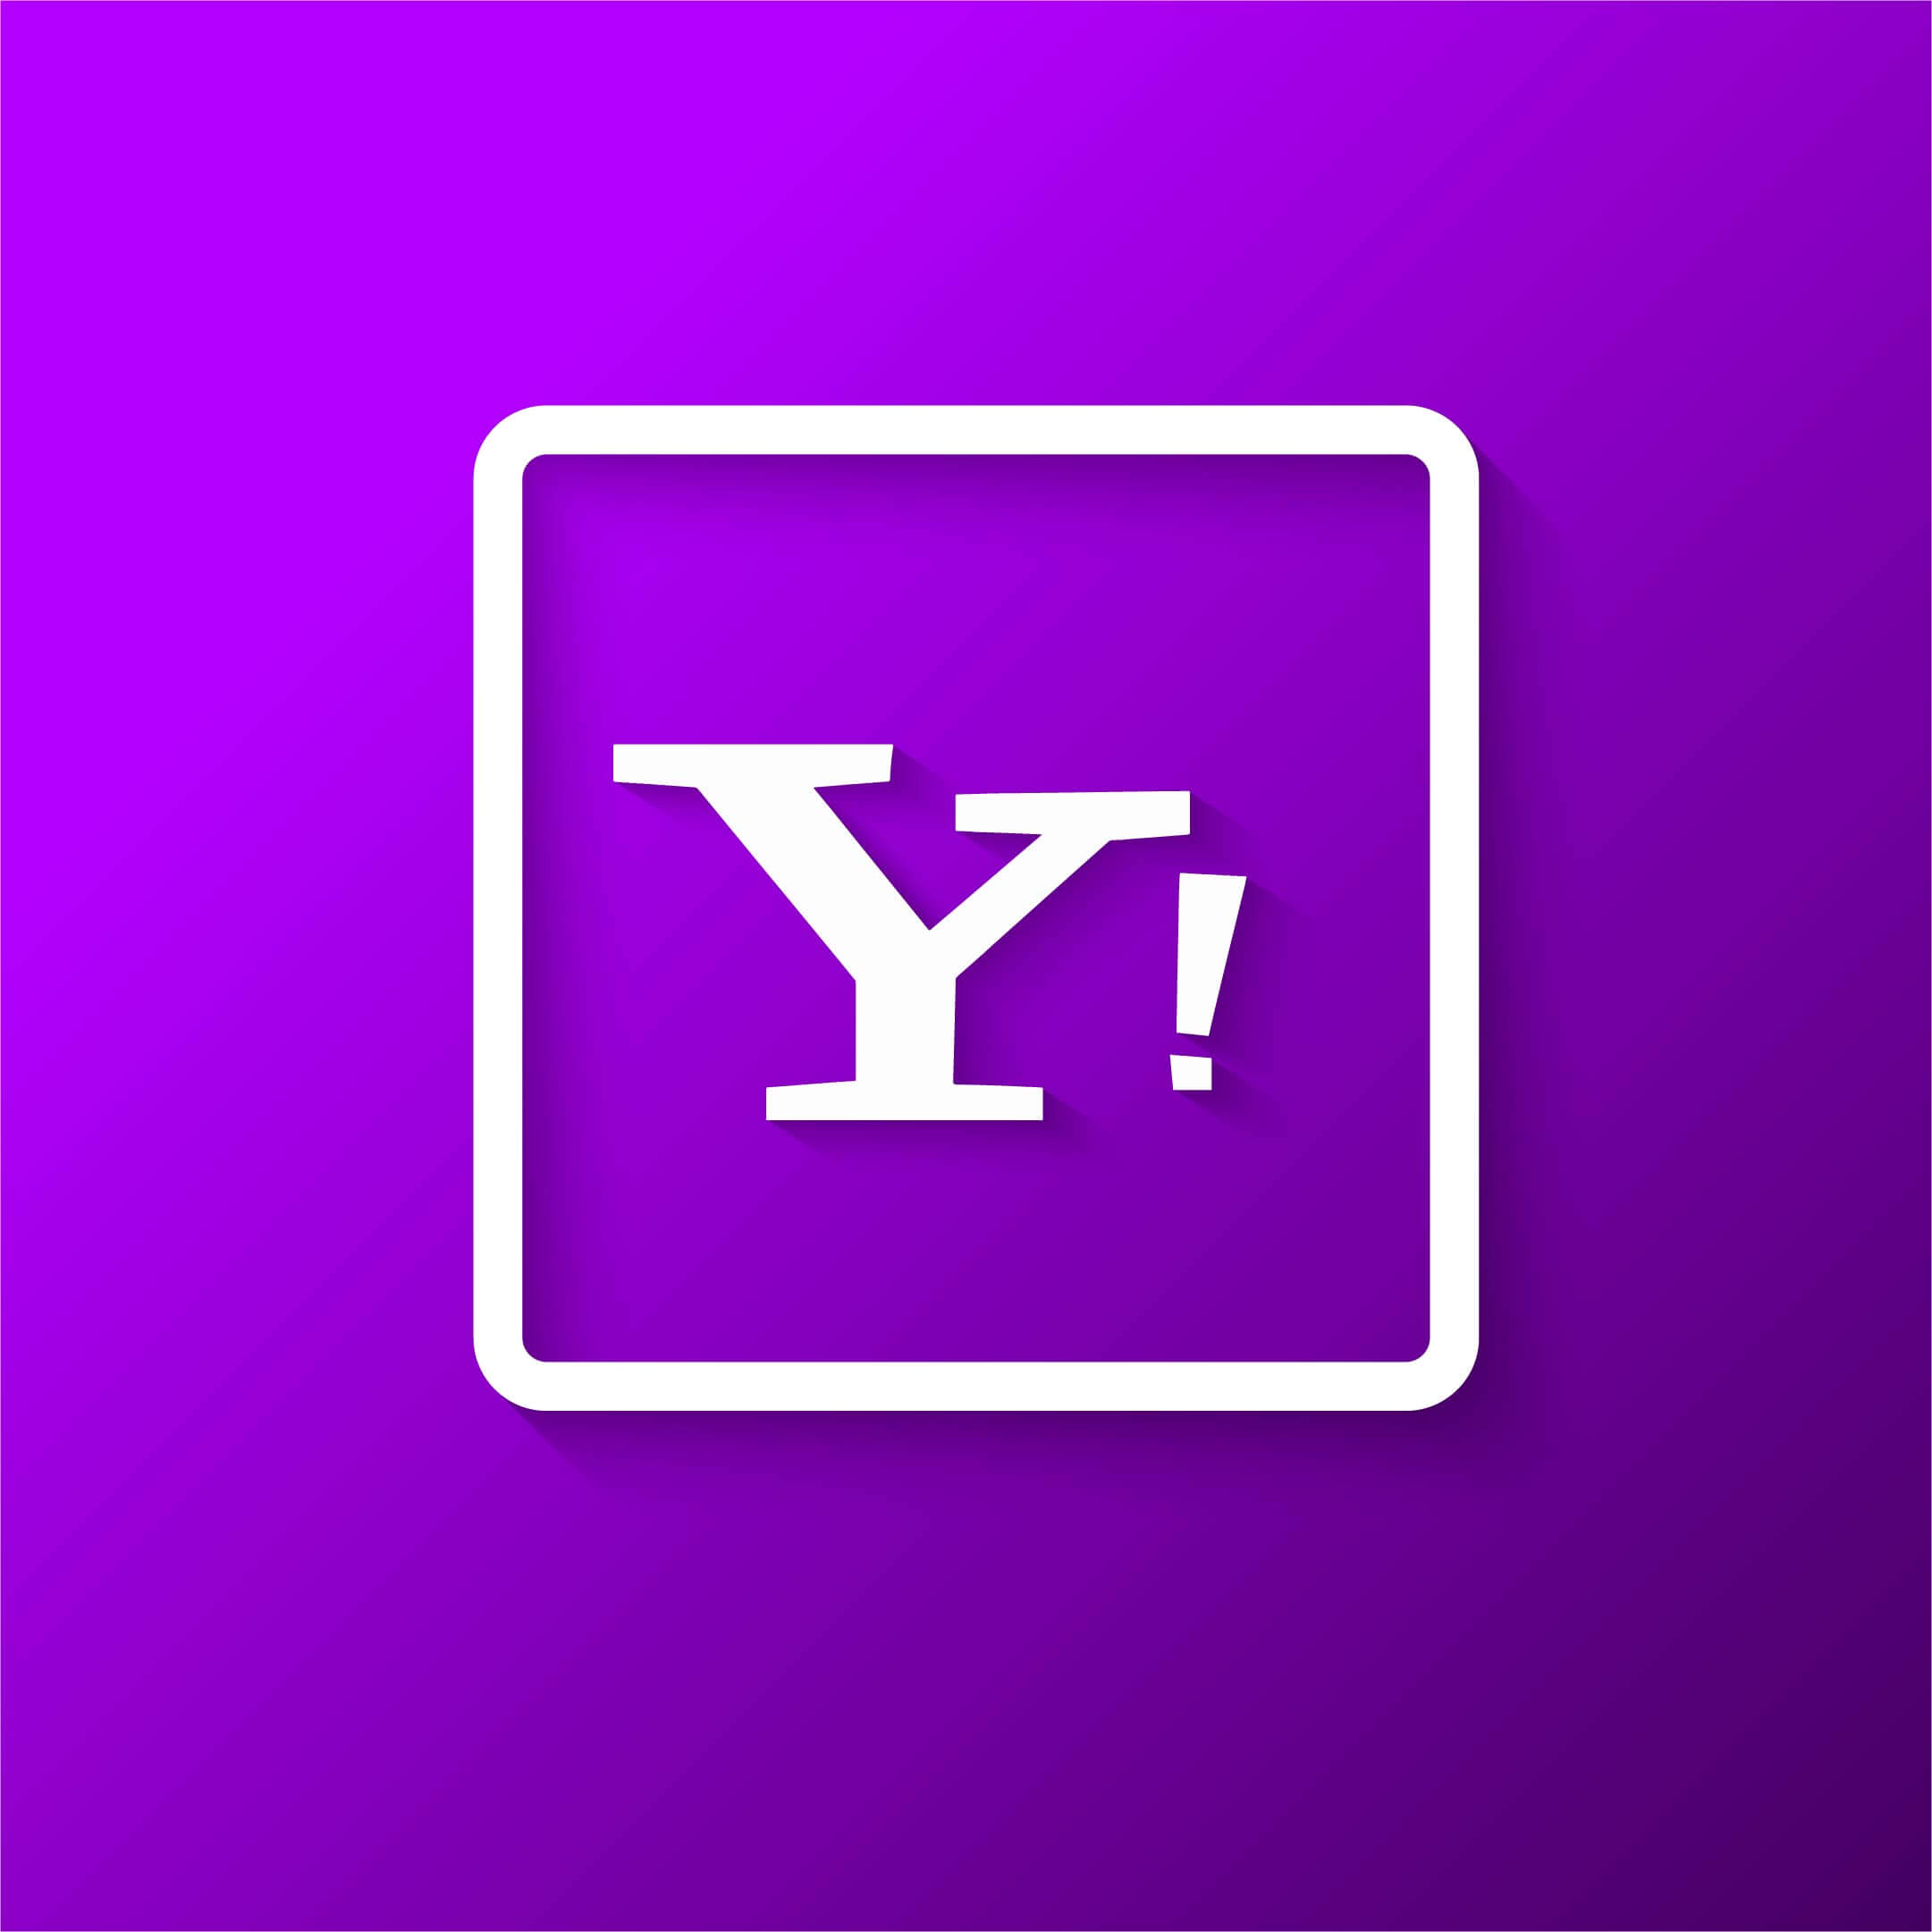 Saiba como anunciar no Yahoo e Bing